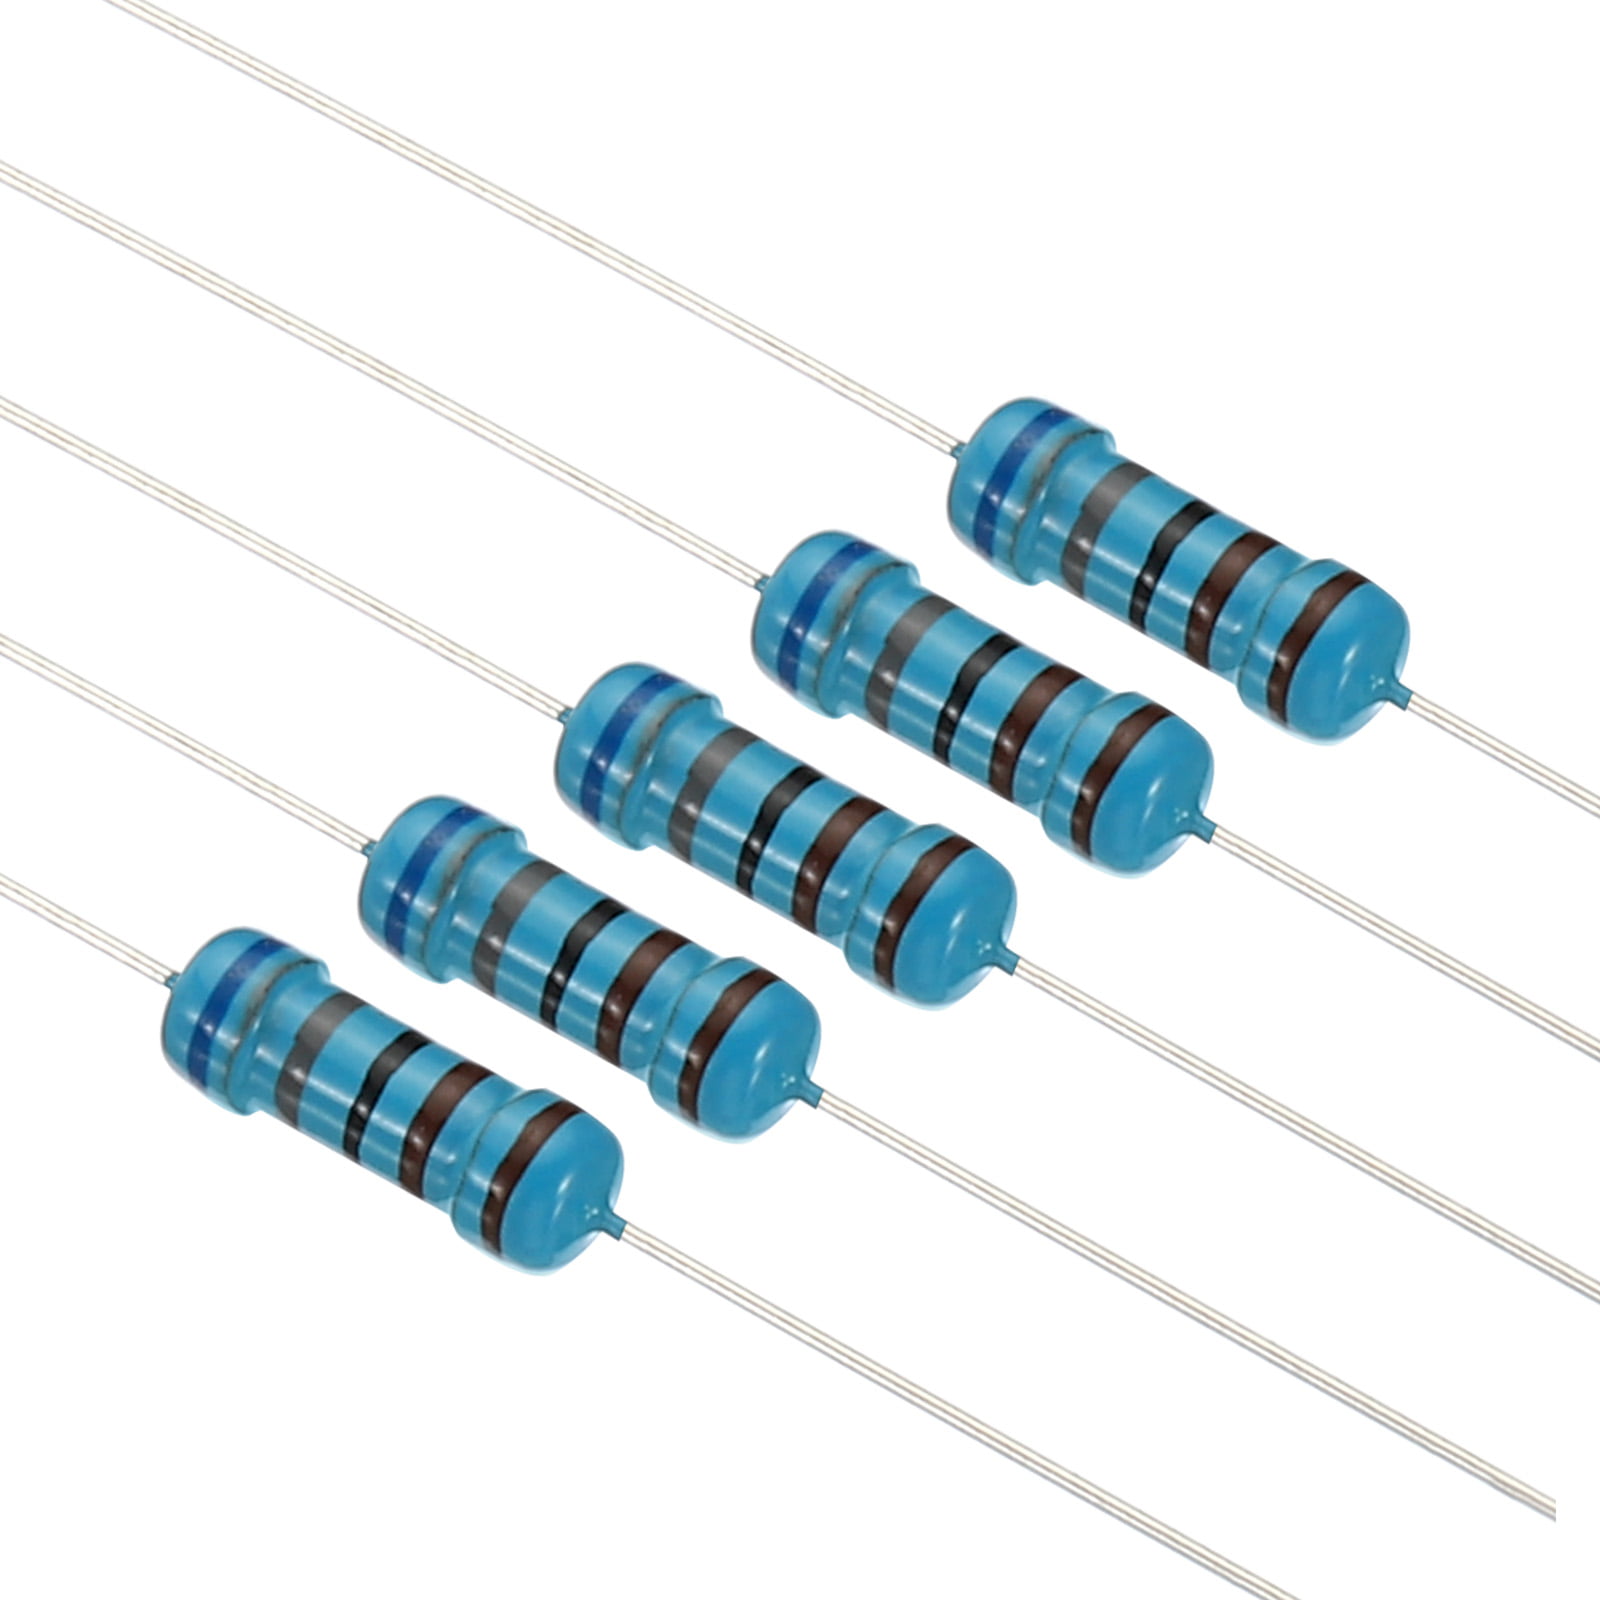 10Ω-1MΩ Resistor Set - RESISTORSET